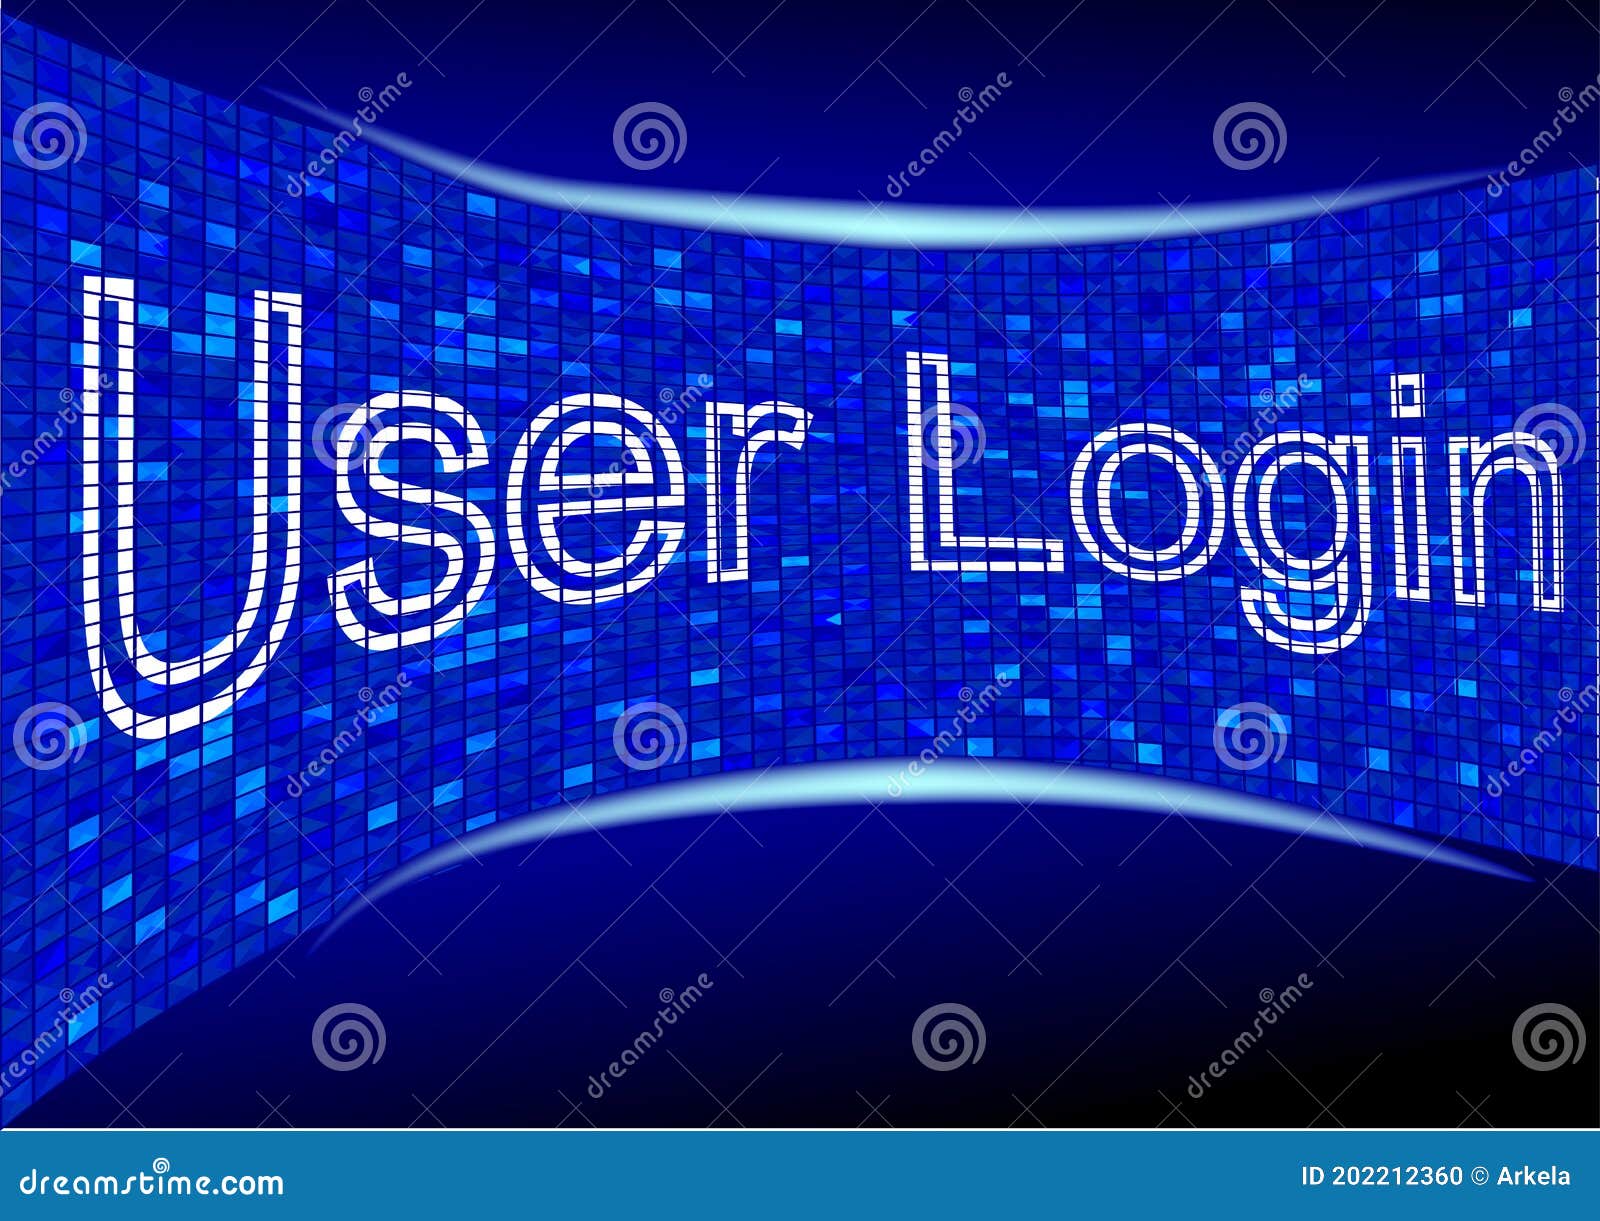 user login background images